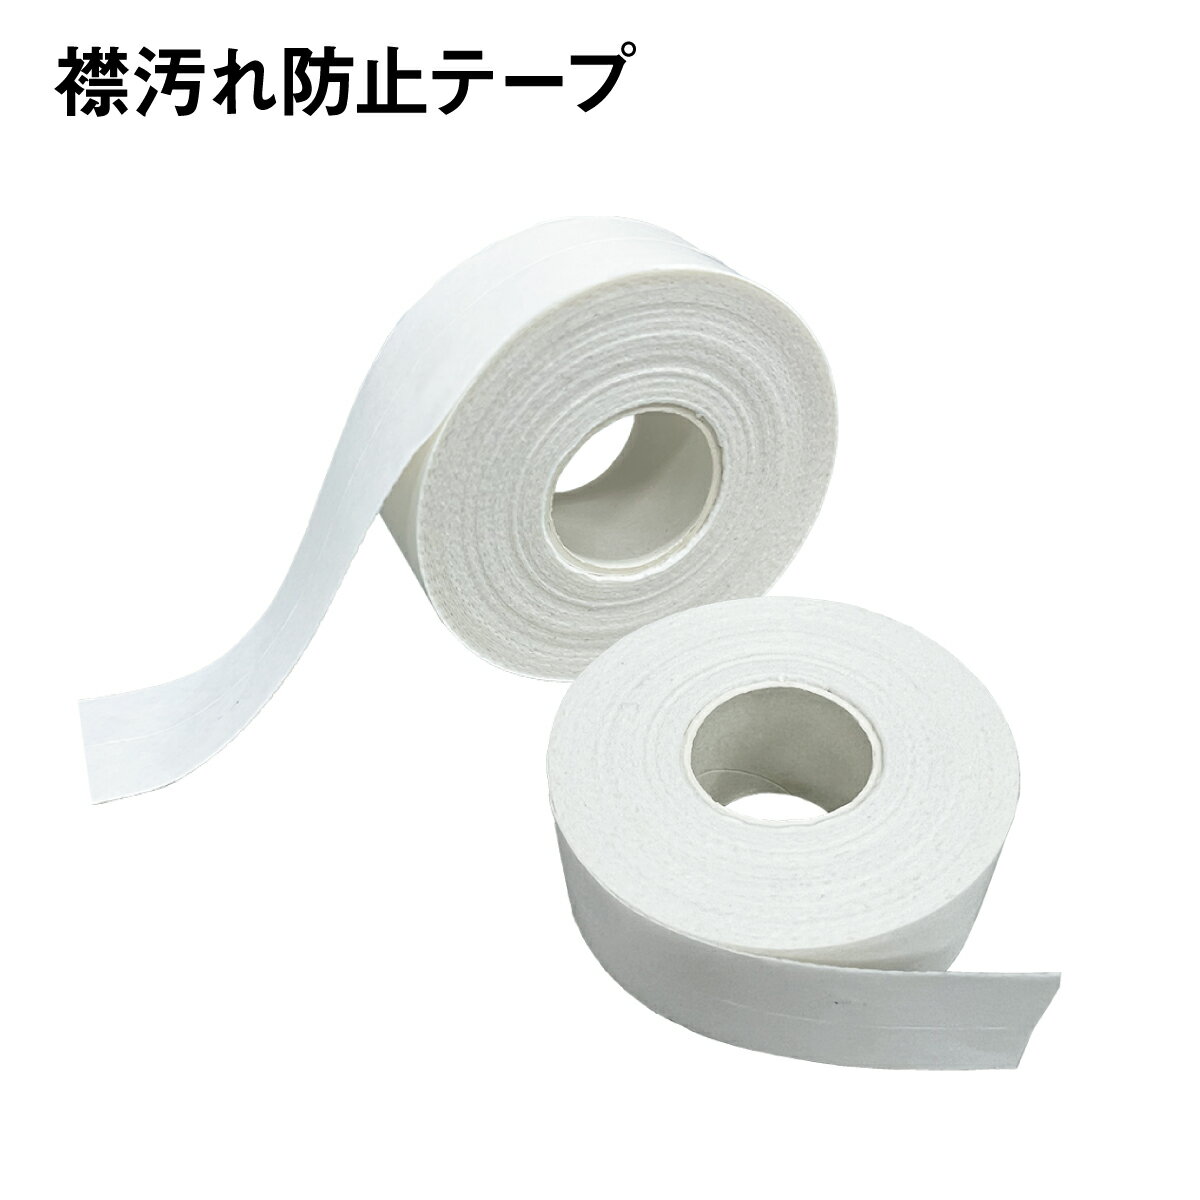 襟汚れ 防止テープ 2個セット 8m よごれガード 皮脂汚れ えり 袖 ボウシ テープ 便利グッズ eri-tape